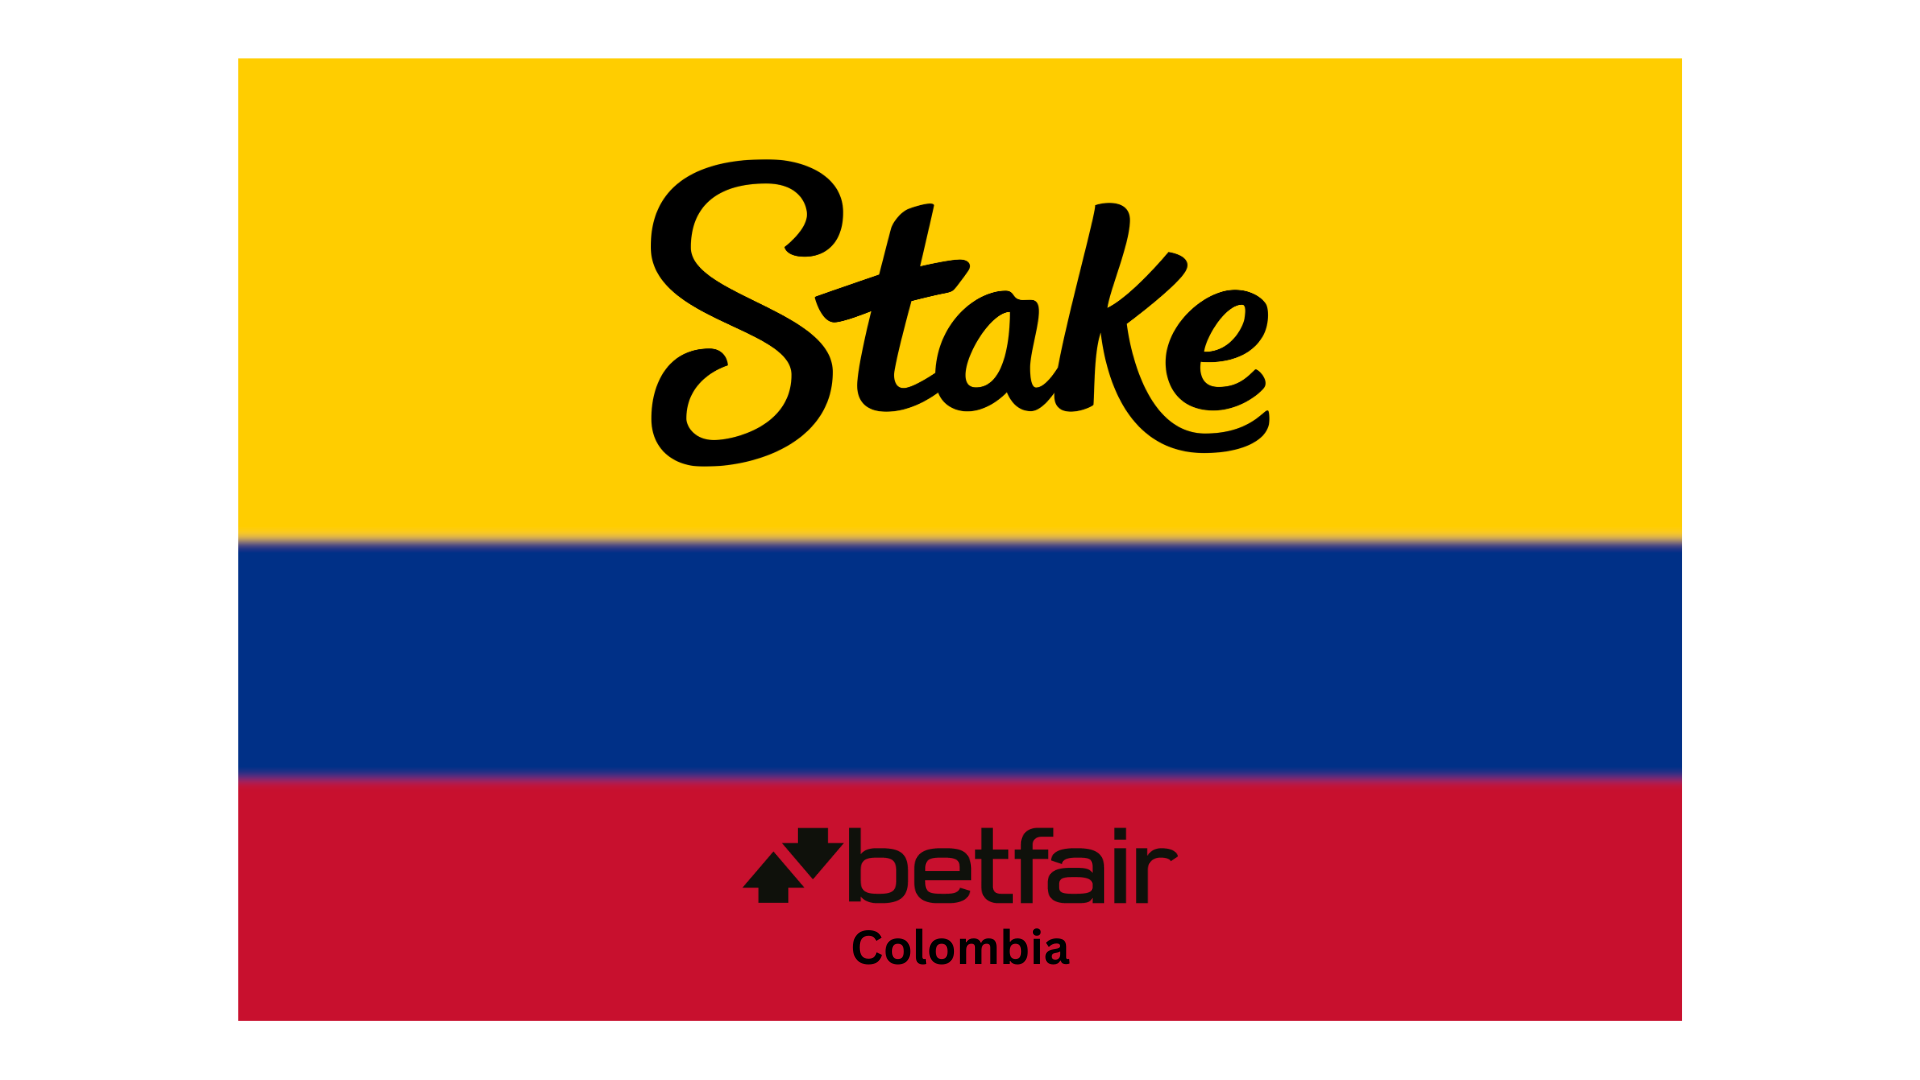 Revelando el Triunfo Estratégico: Adquisición de Betfair Colombia por Stake